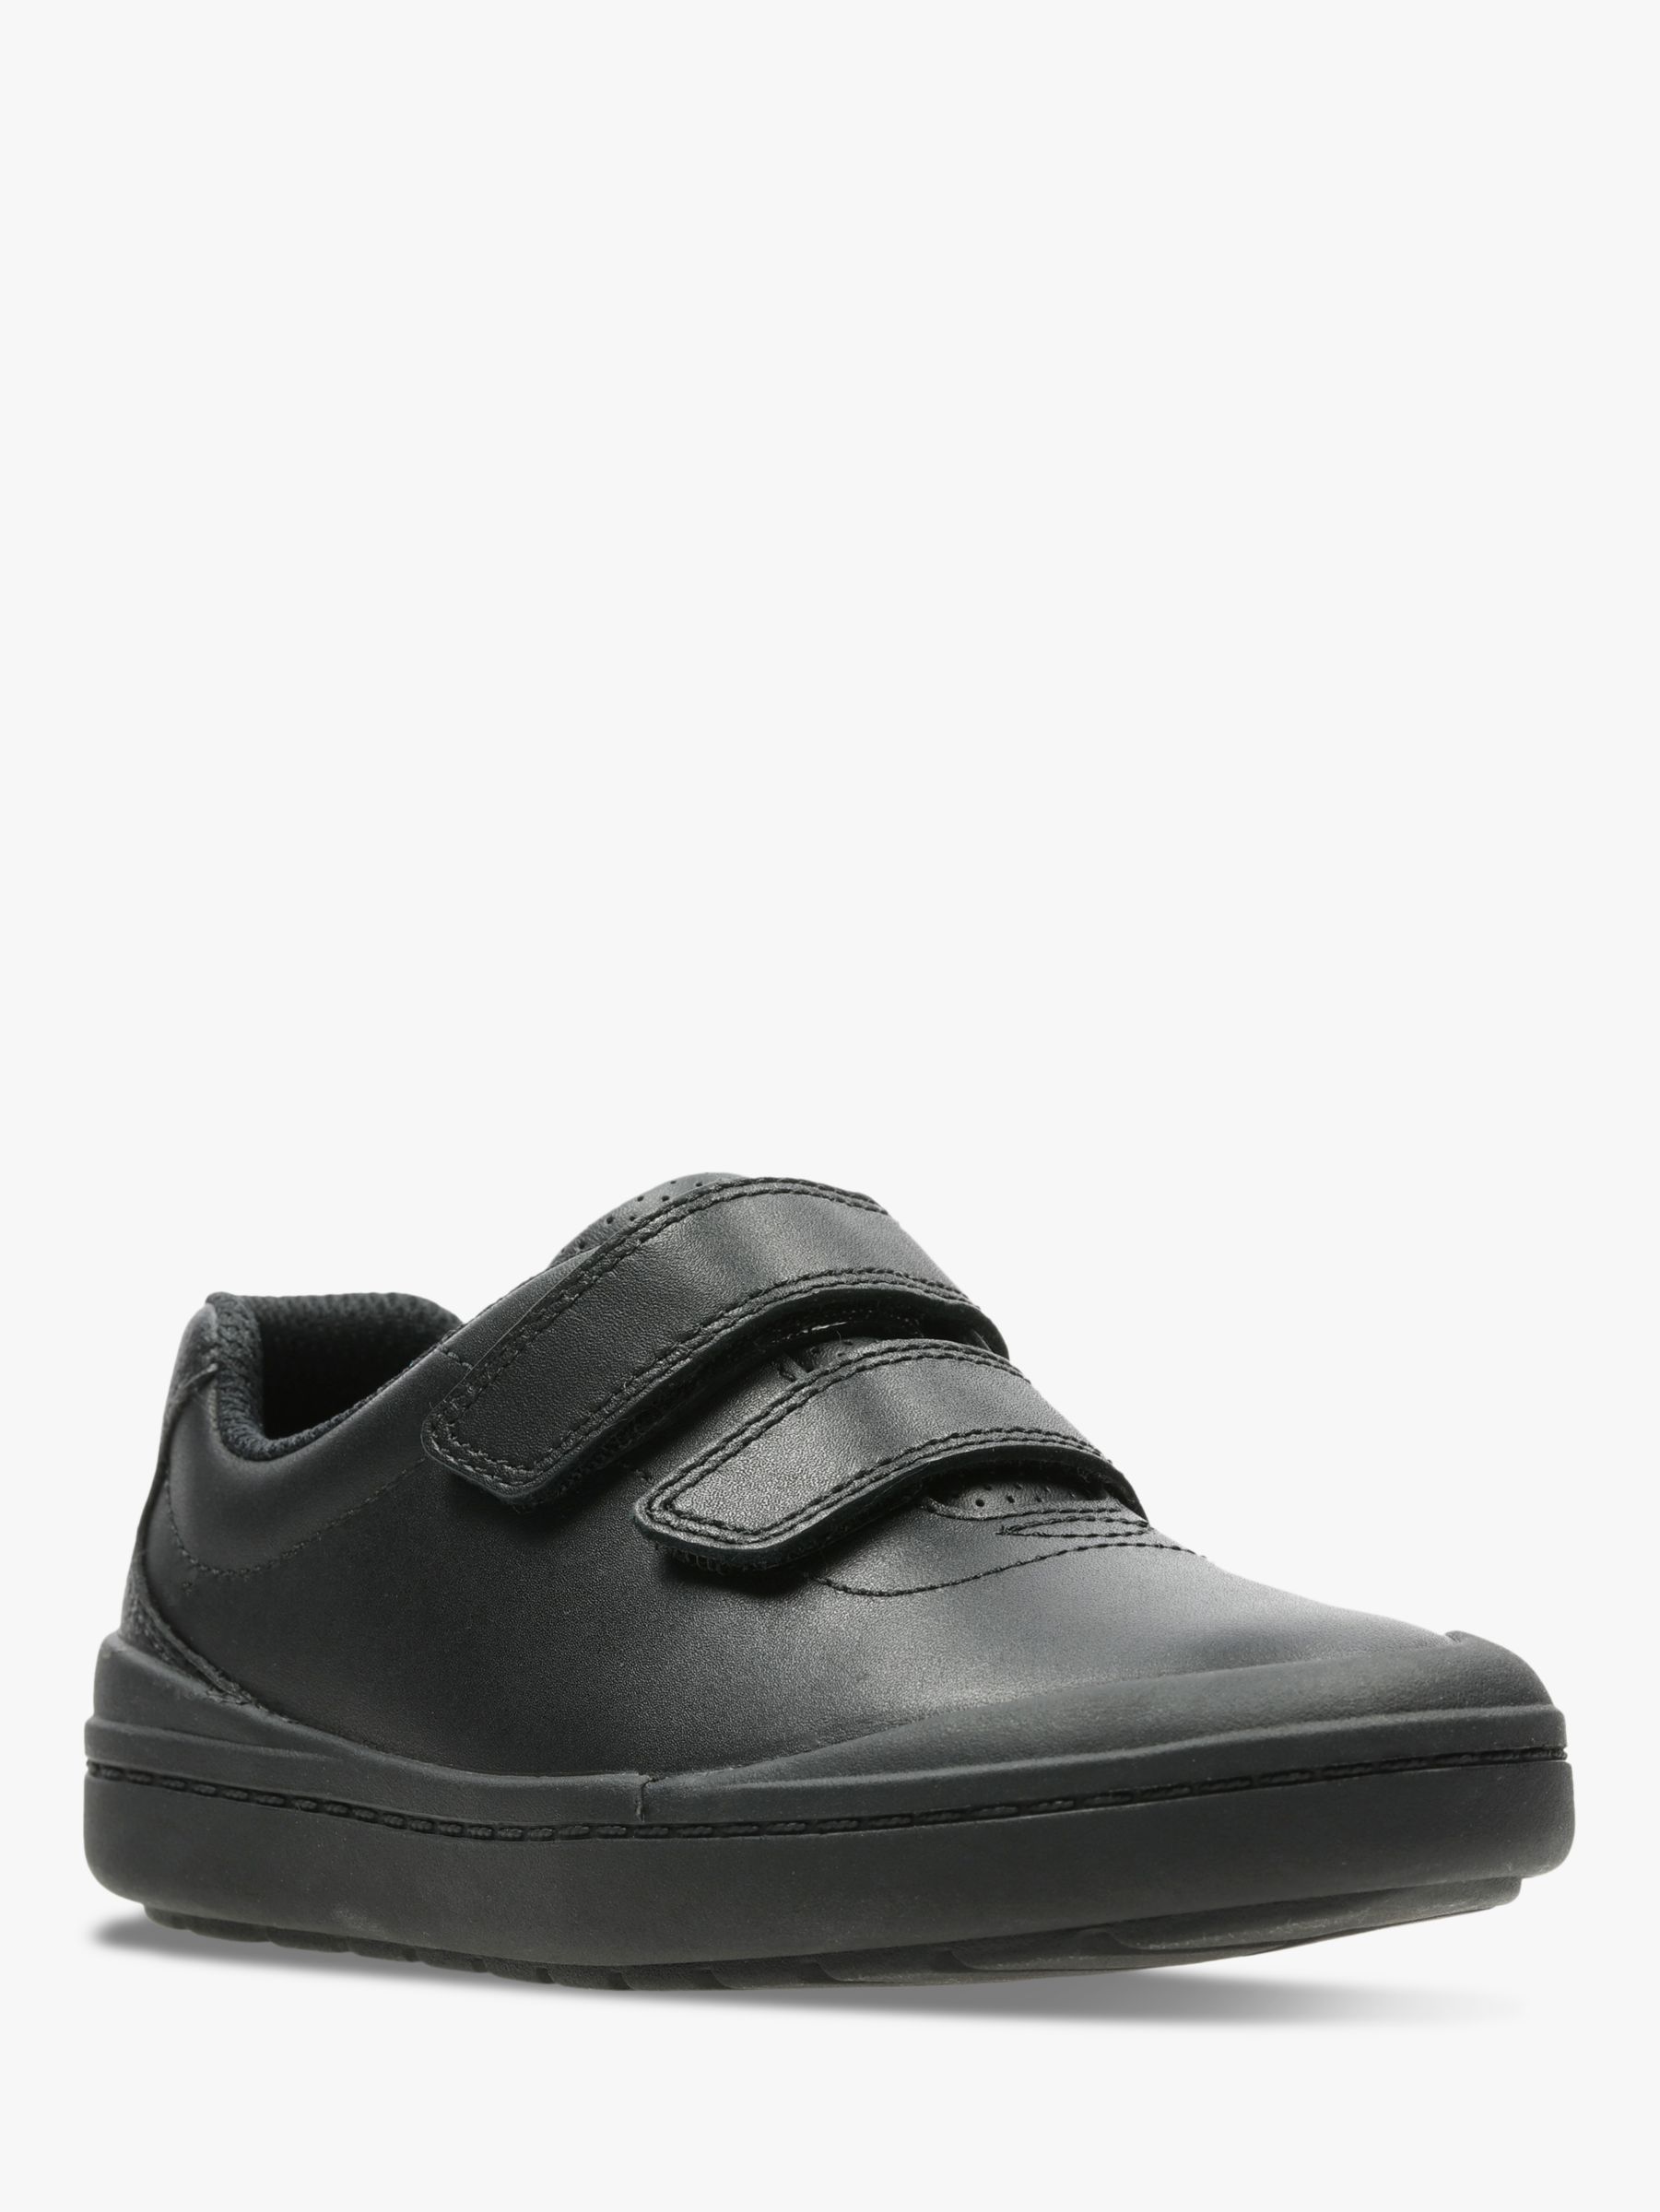 Boys Clarks Venture Walk Black Leather Double Strap School Shoes